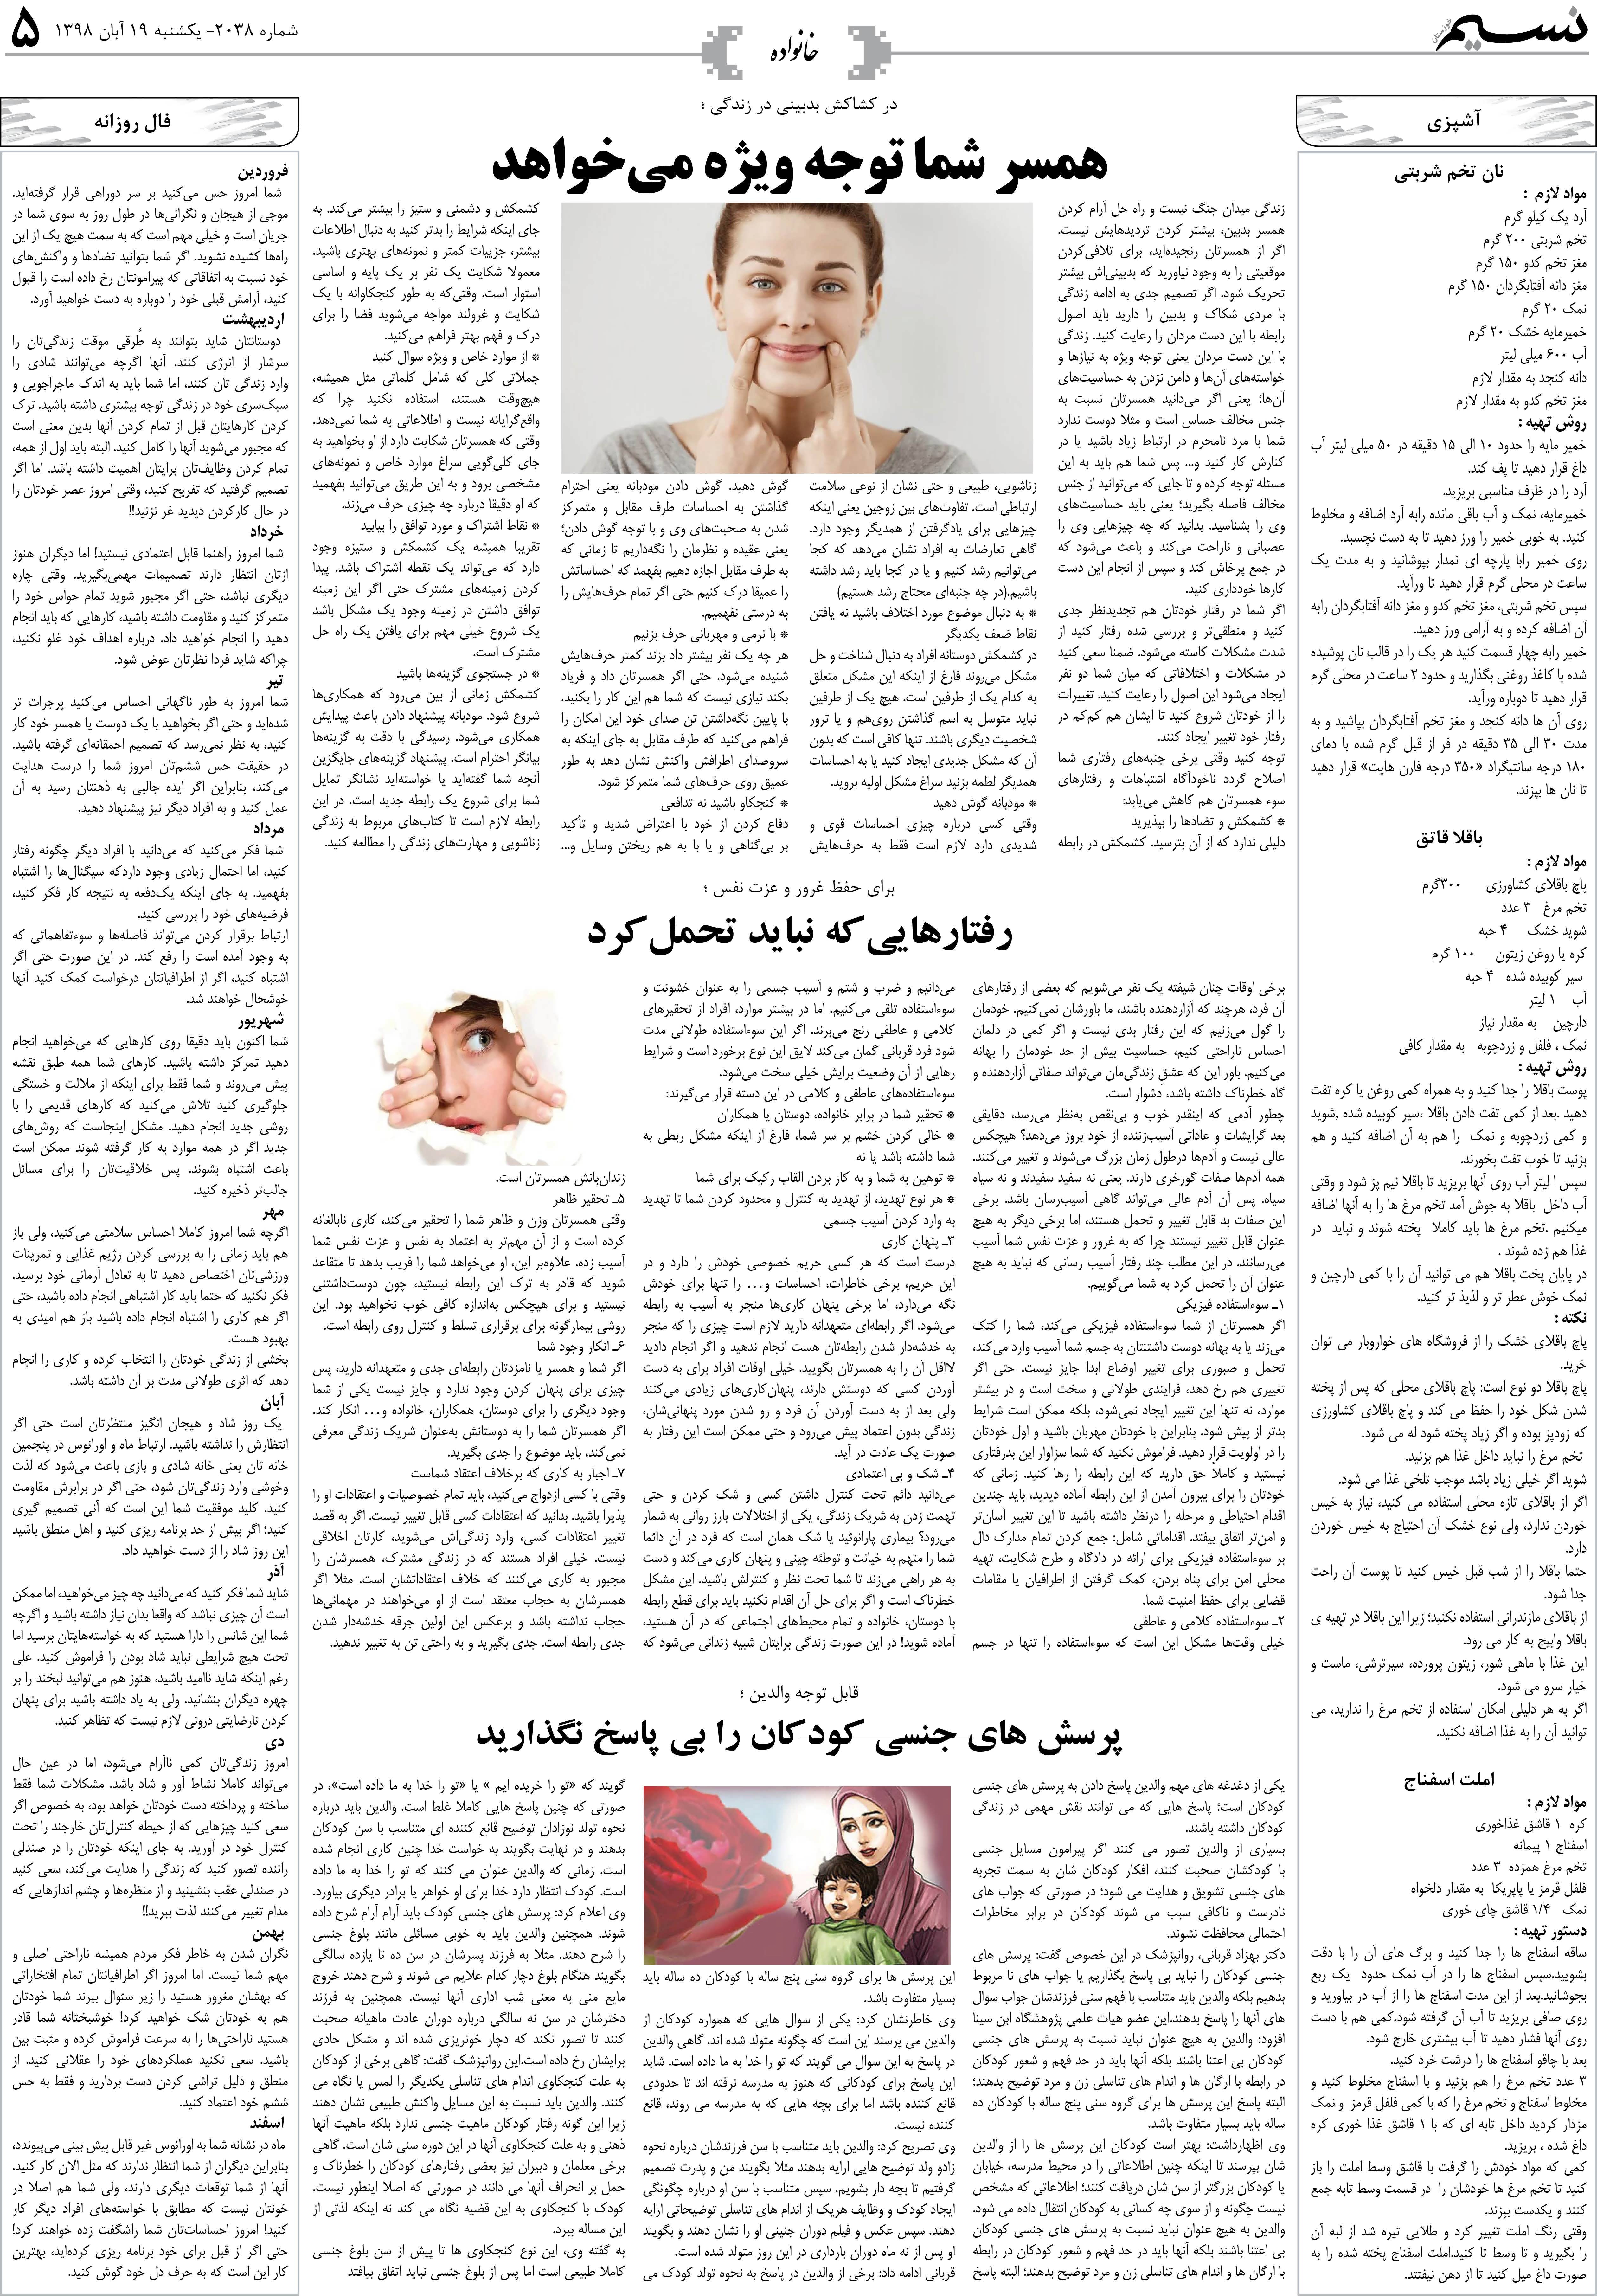 صفحه خانواده روزنامه نسیم شماره 2038